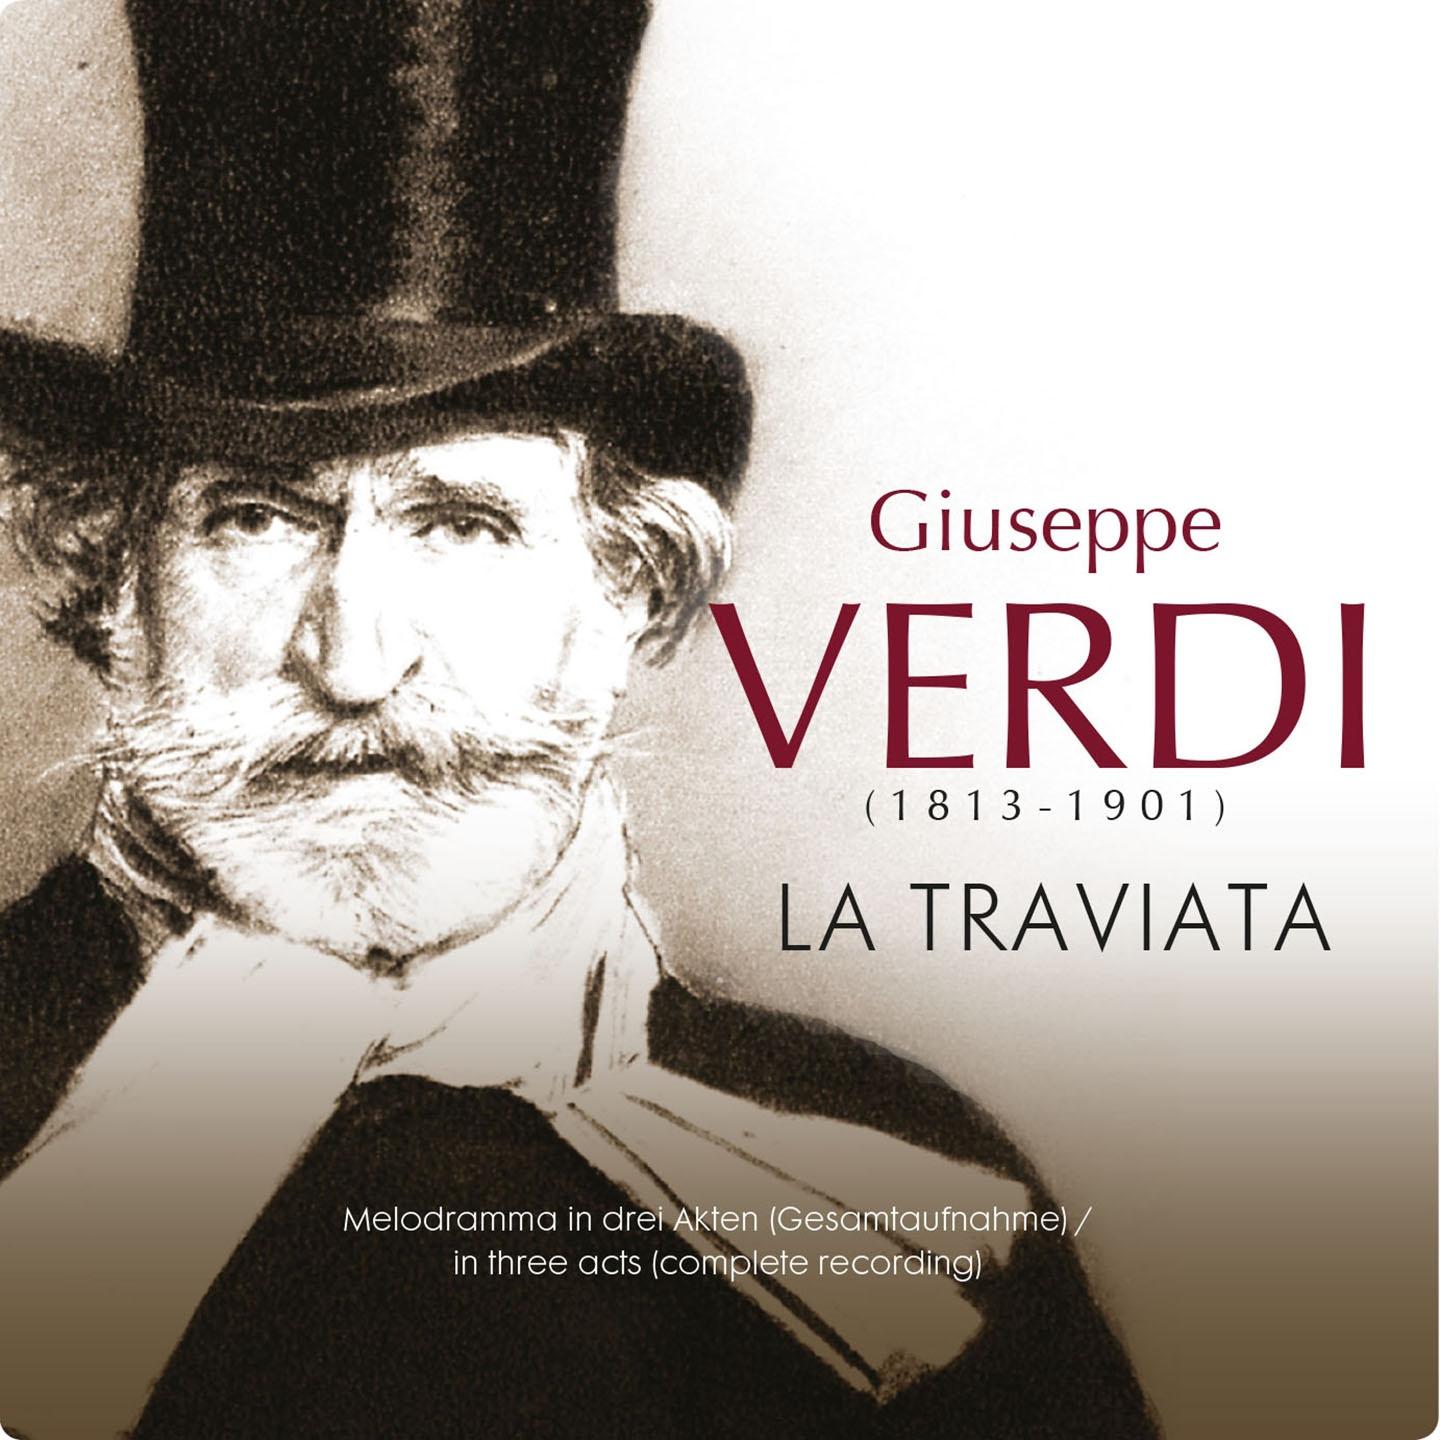 La Traviata, Act I: " Dell' invito trascorsa ... Flora, amici"